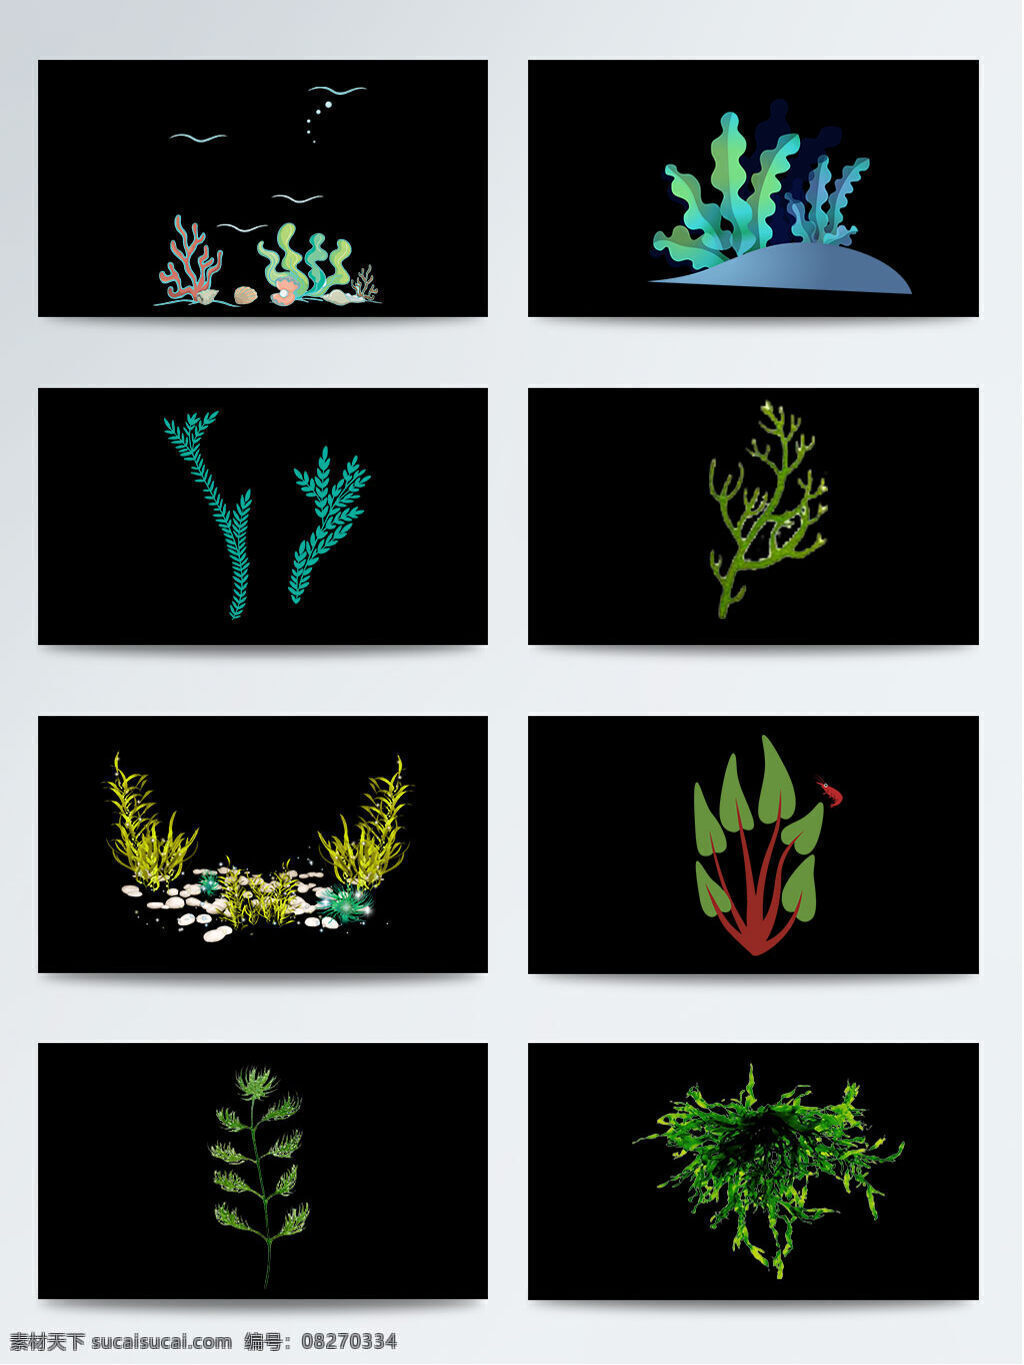 插画 海底 海底水草 礁石 卡通 飘动的水草 清新 手绘 水彩 水草 水草叶子 植物 叶子 元素